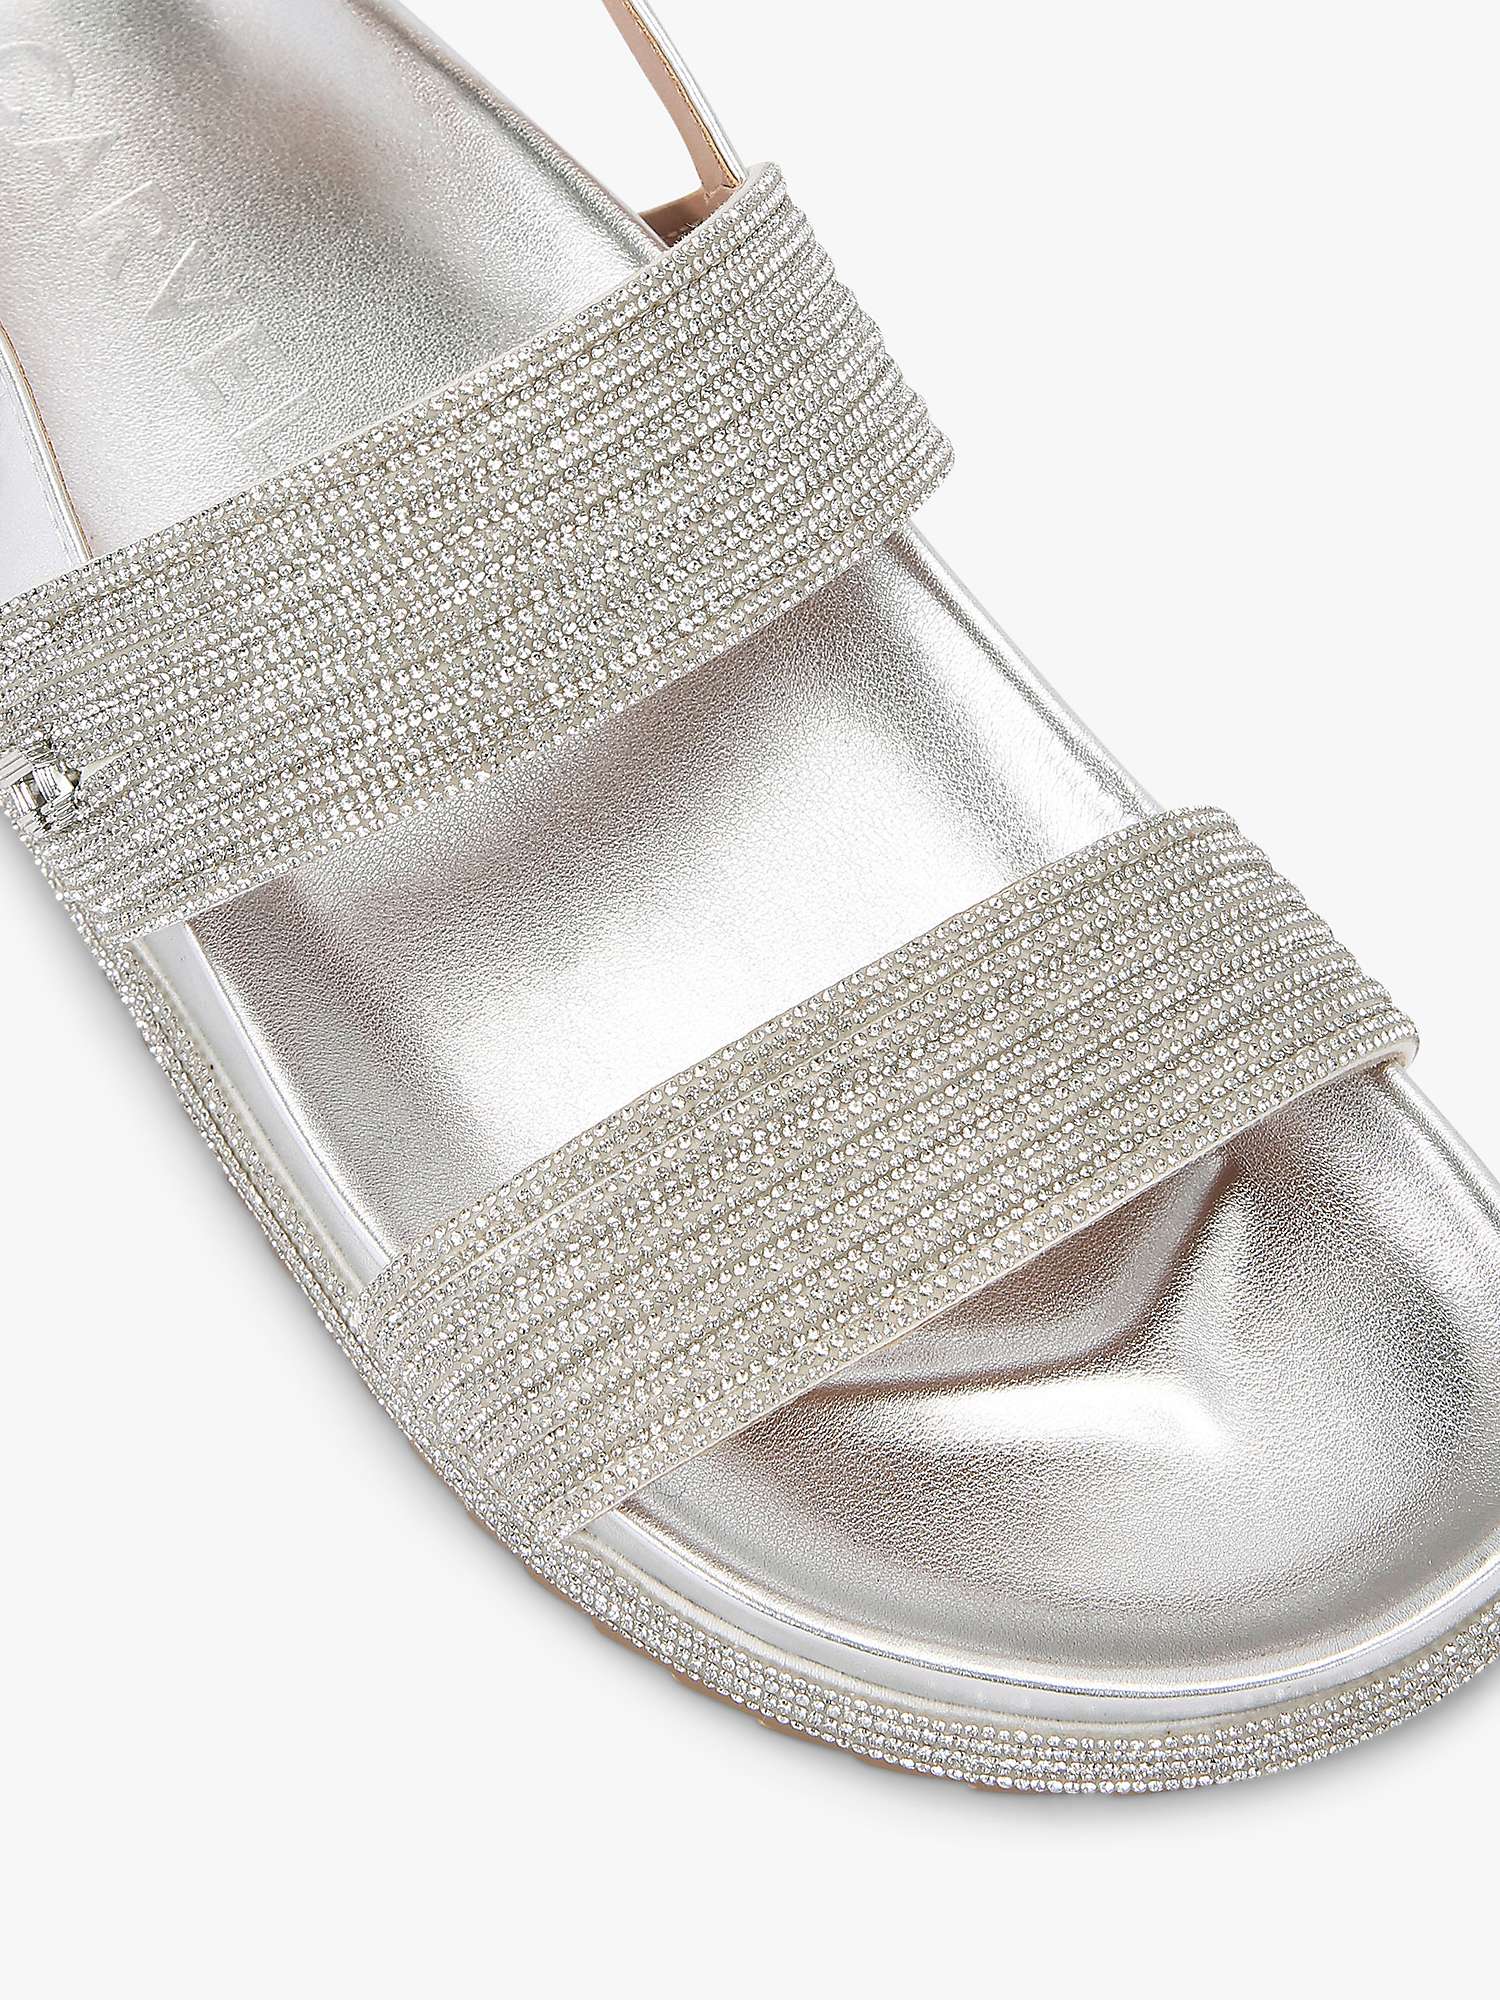 Buy Carvela Gala Strap Flatform Sandals Online at johnlewis.com